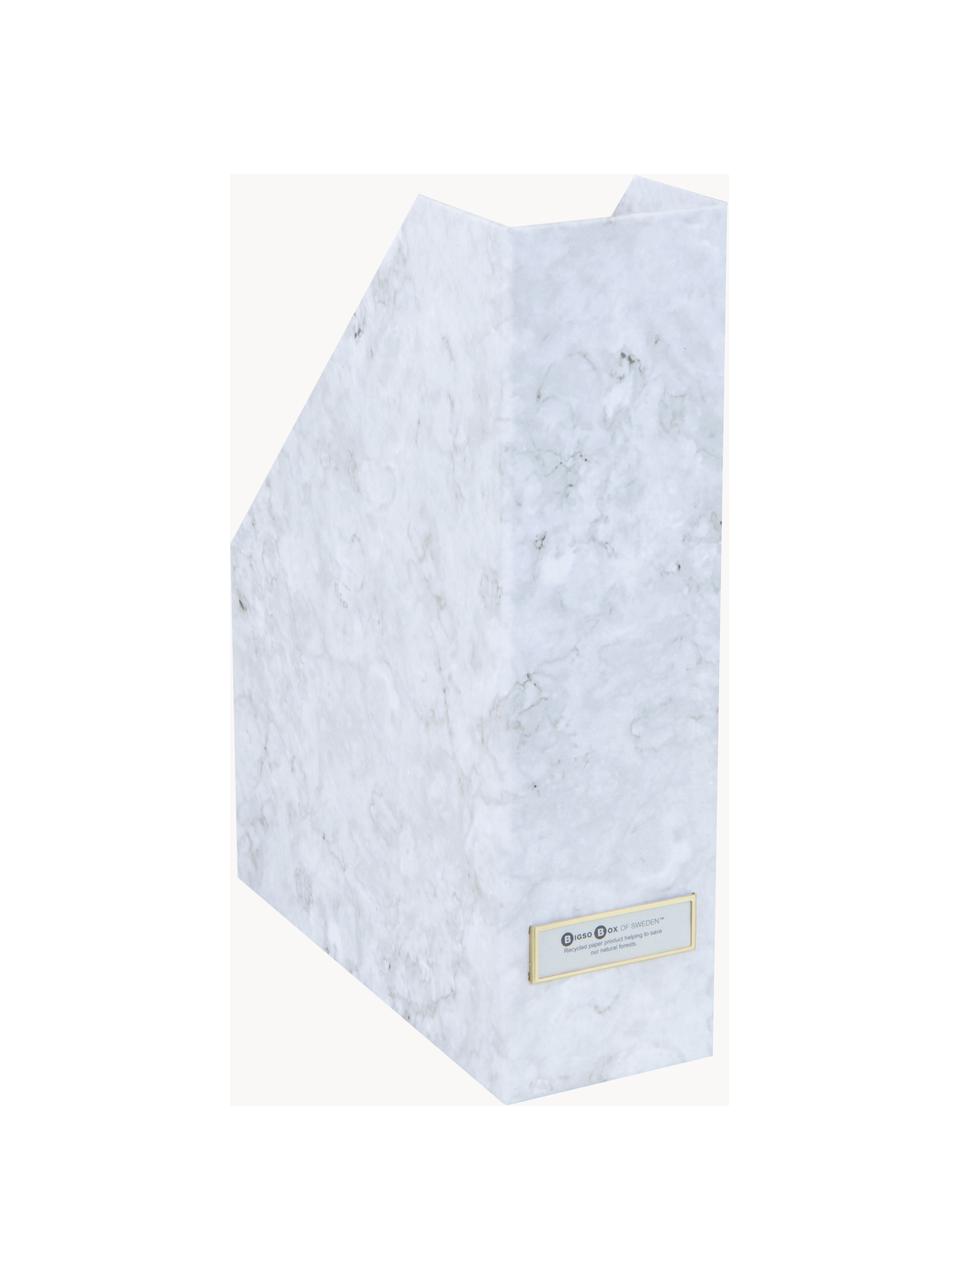 Raccogliatori Viola 2 pz, Tela, cartone rigido effetto marmo, Bianco marmorizzato, Larg. 10 x Prof. 25 cm